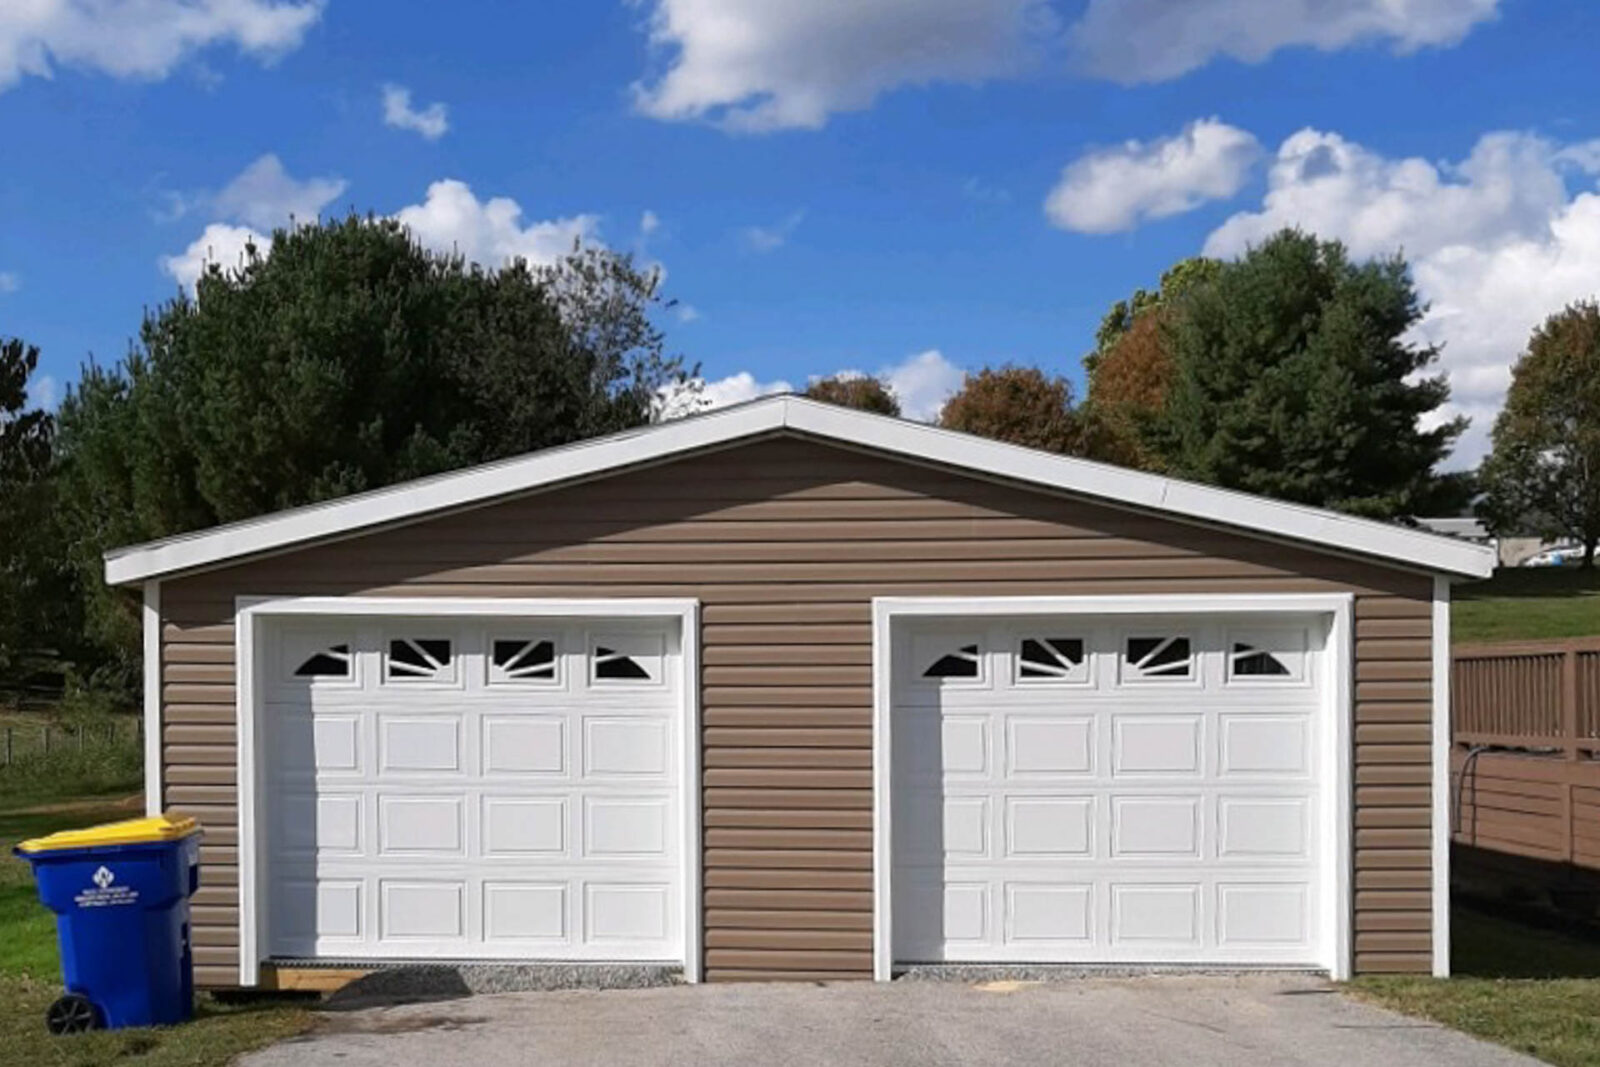 A 2-car modular garage.